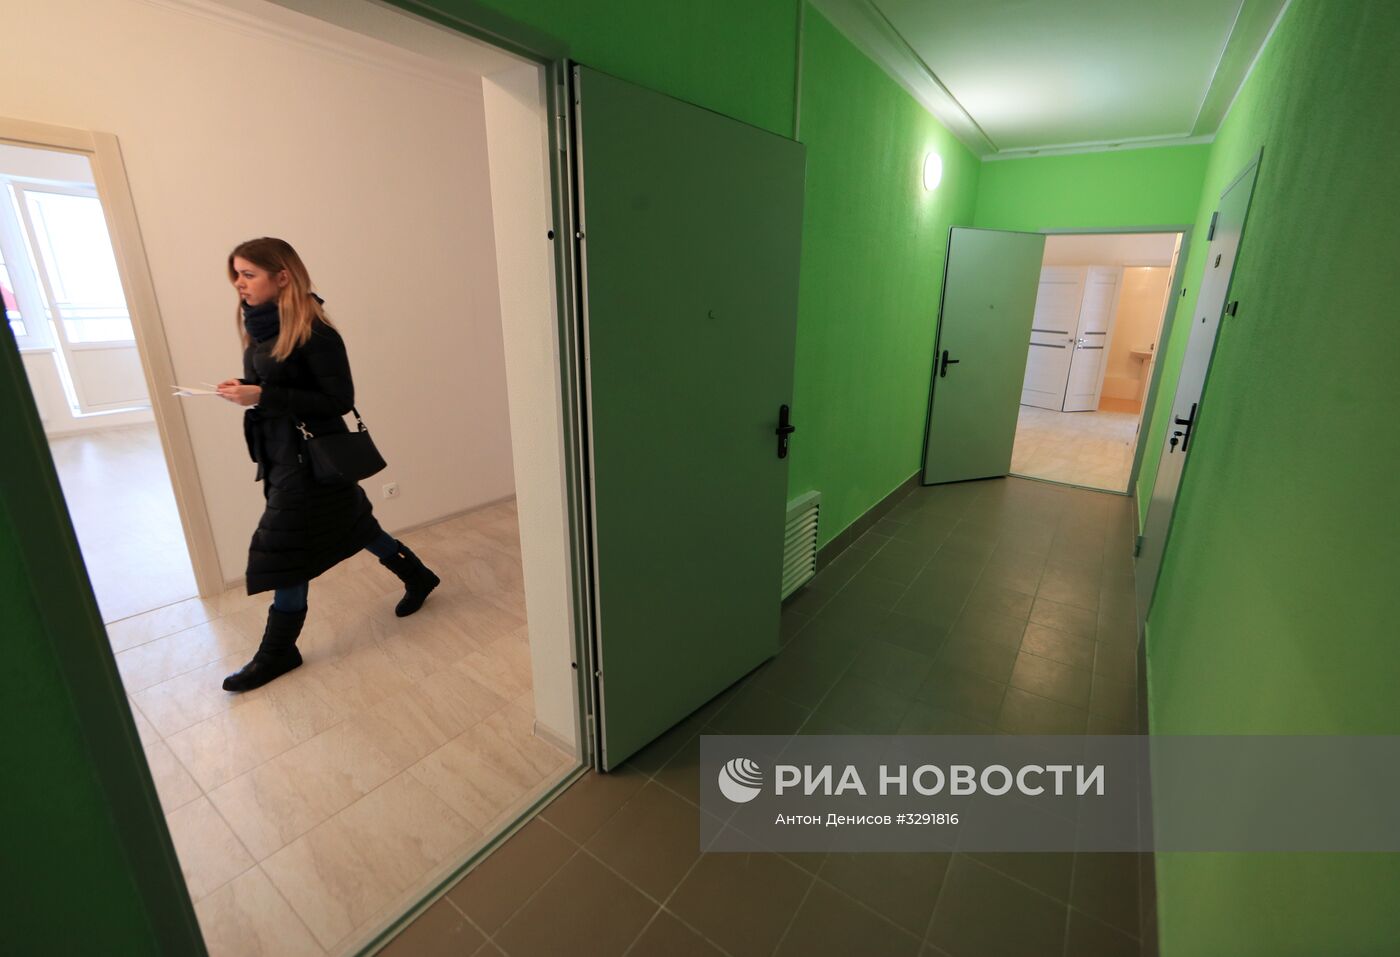 Первый дом для переселения по программе реновации в Москве